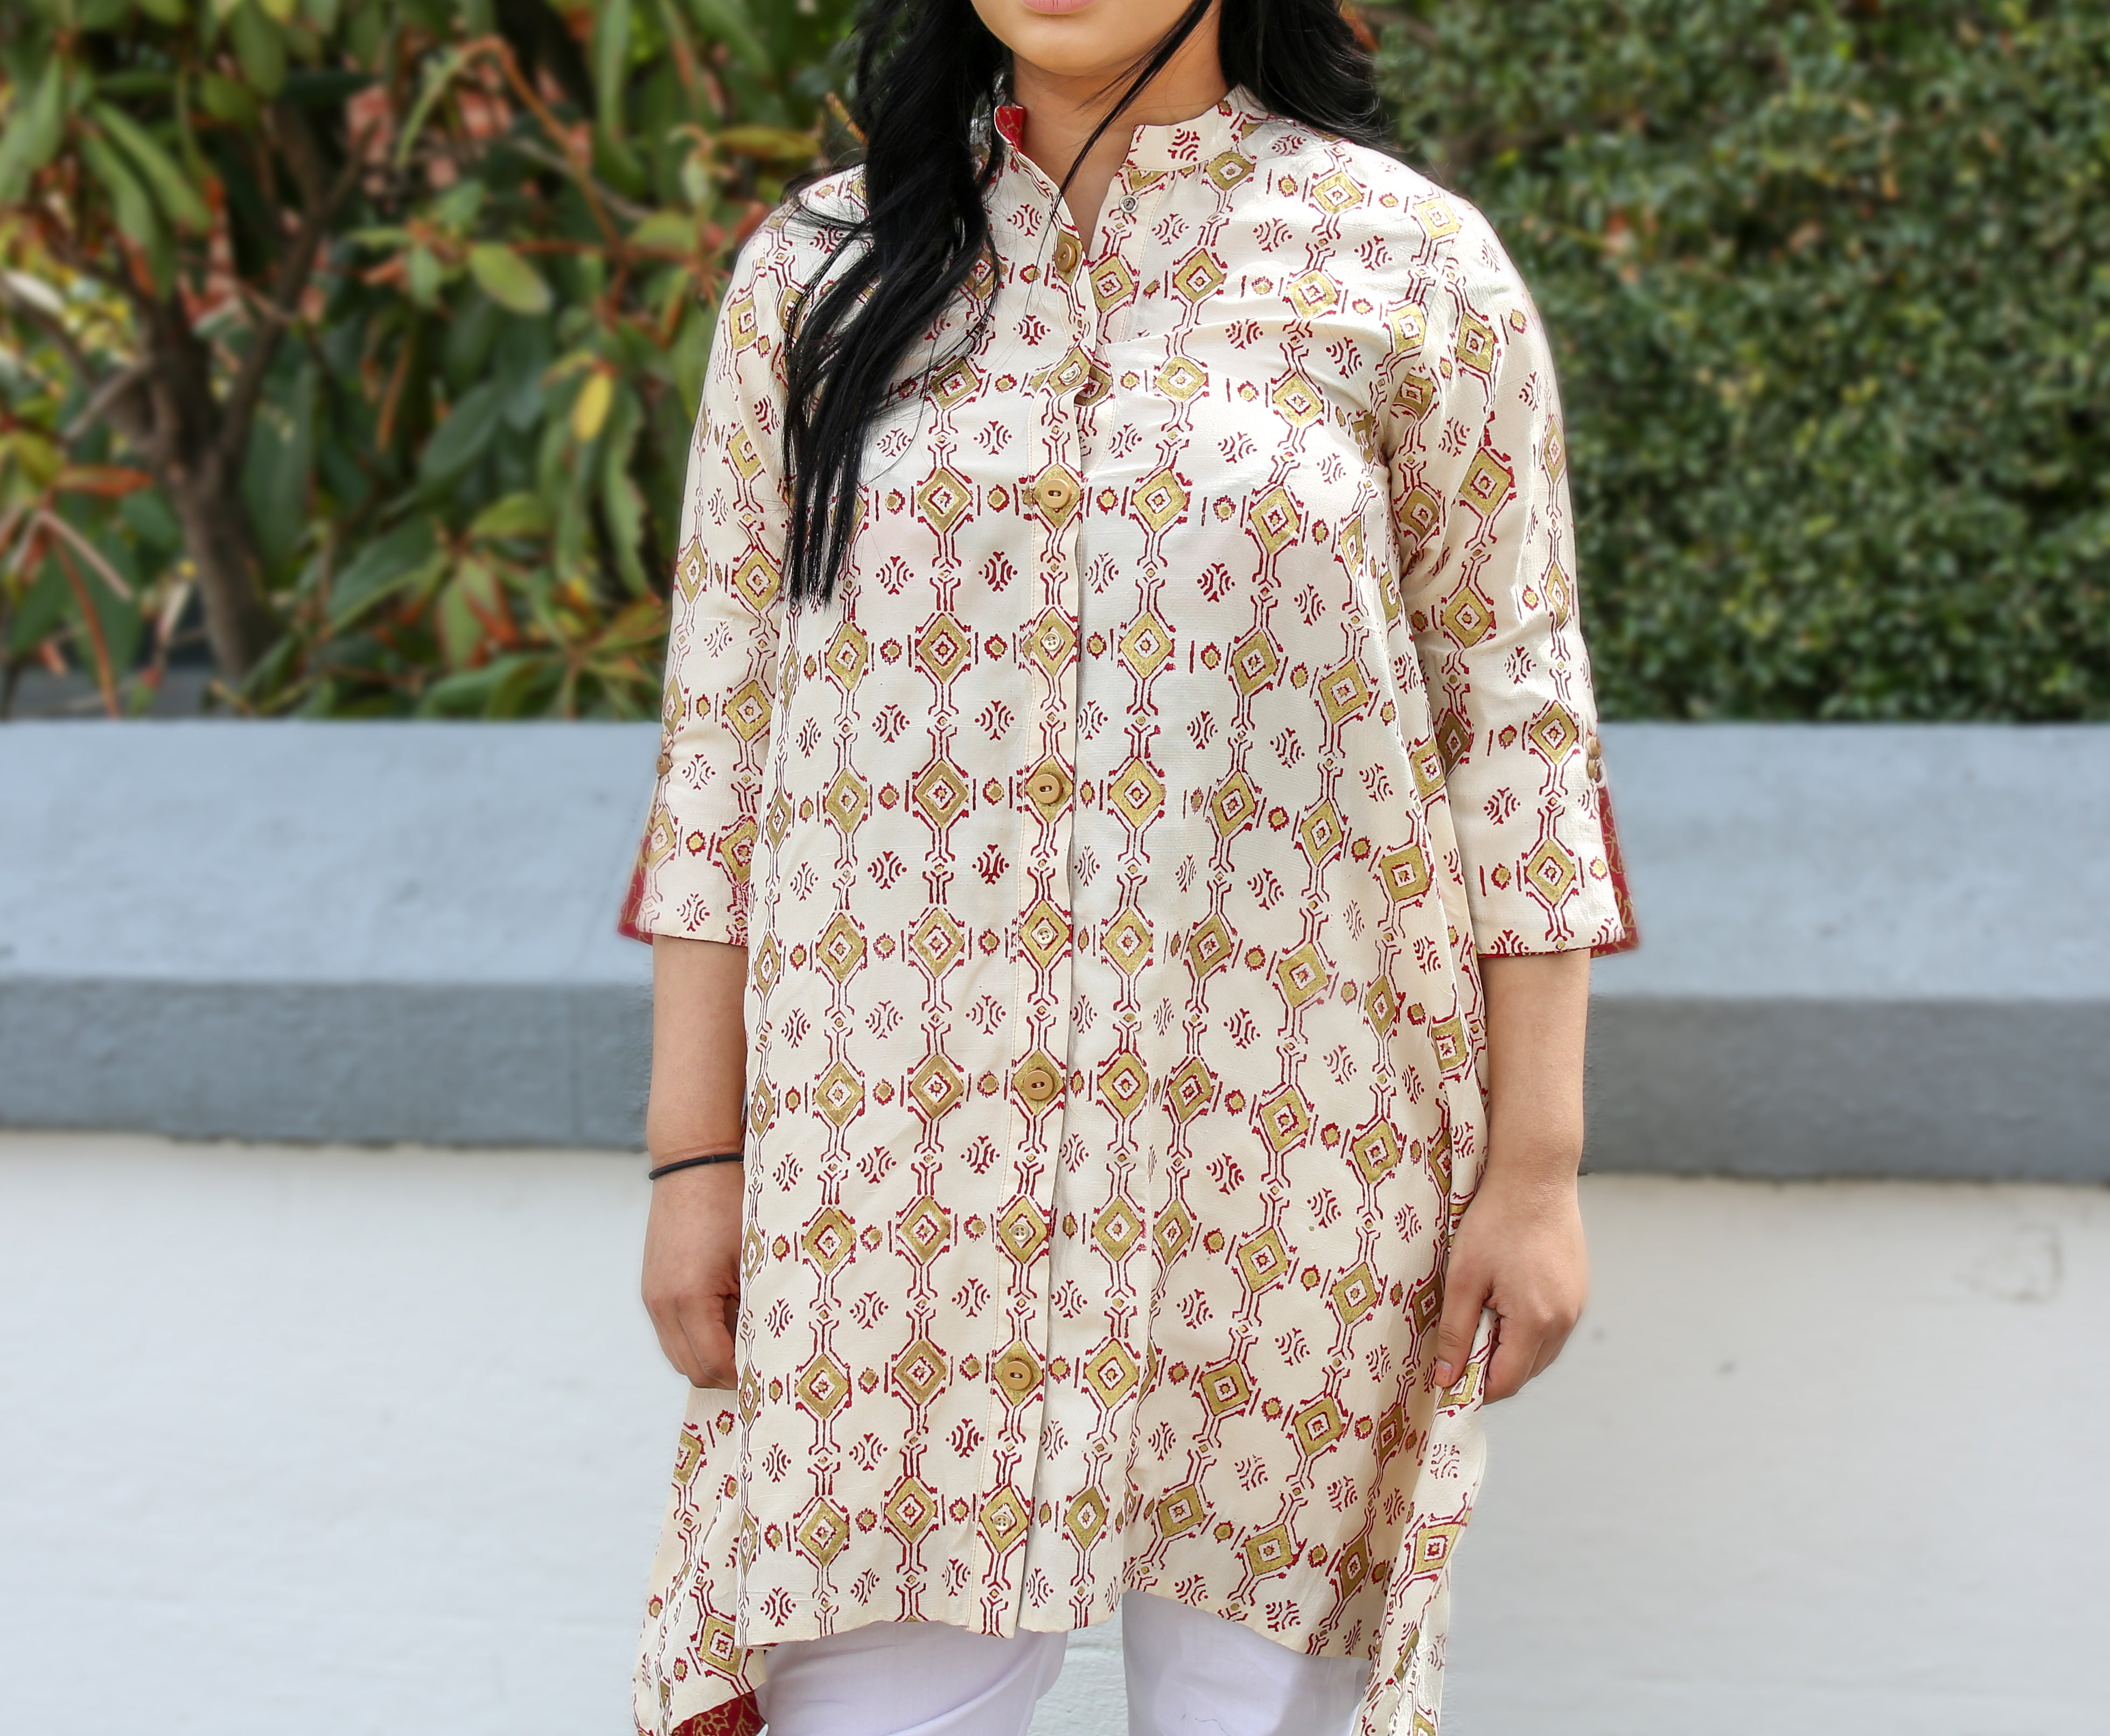 Designer Salwar Kameez, Designer Salwar Suits, Buy Online Designer Dresses